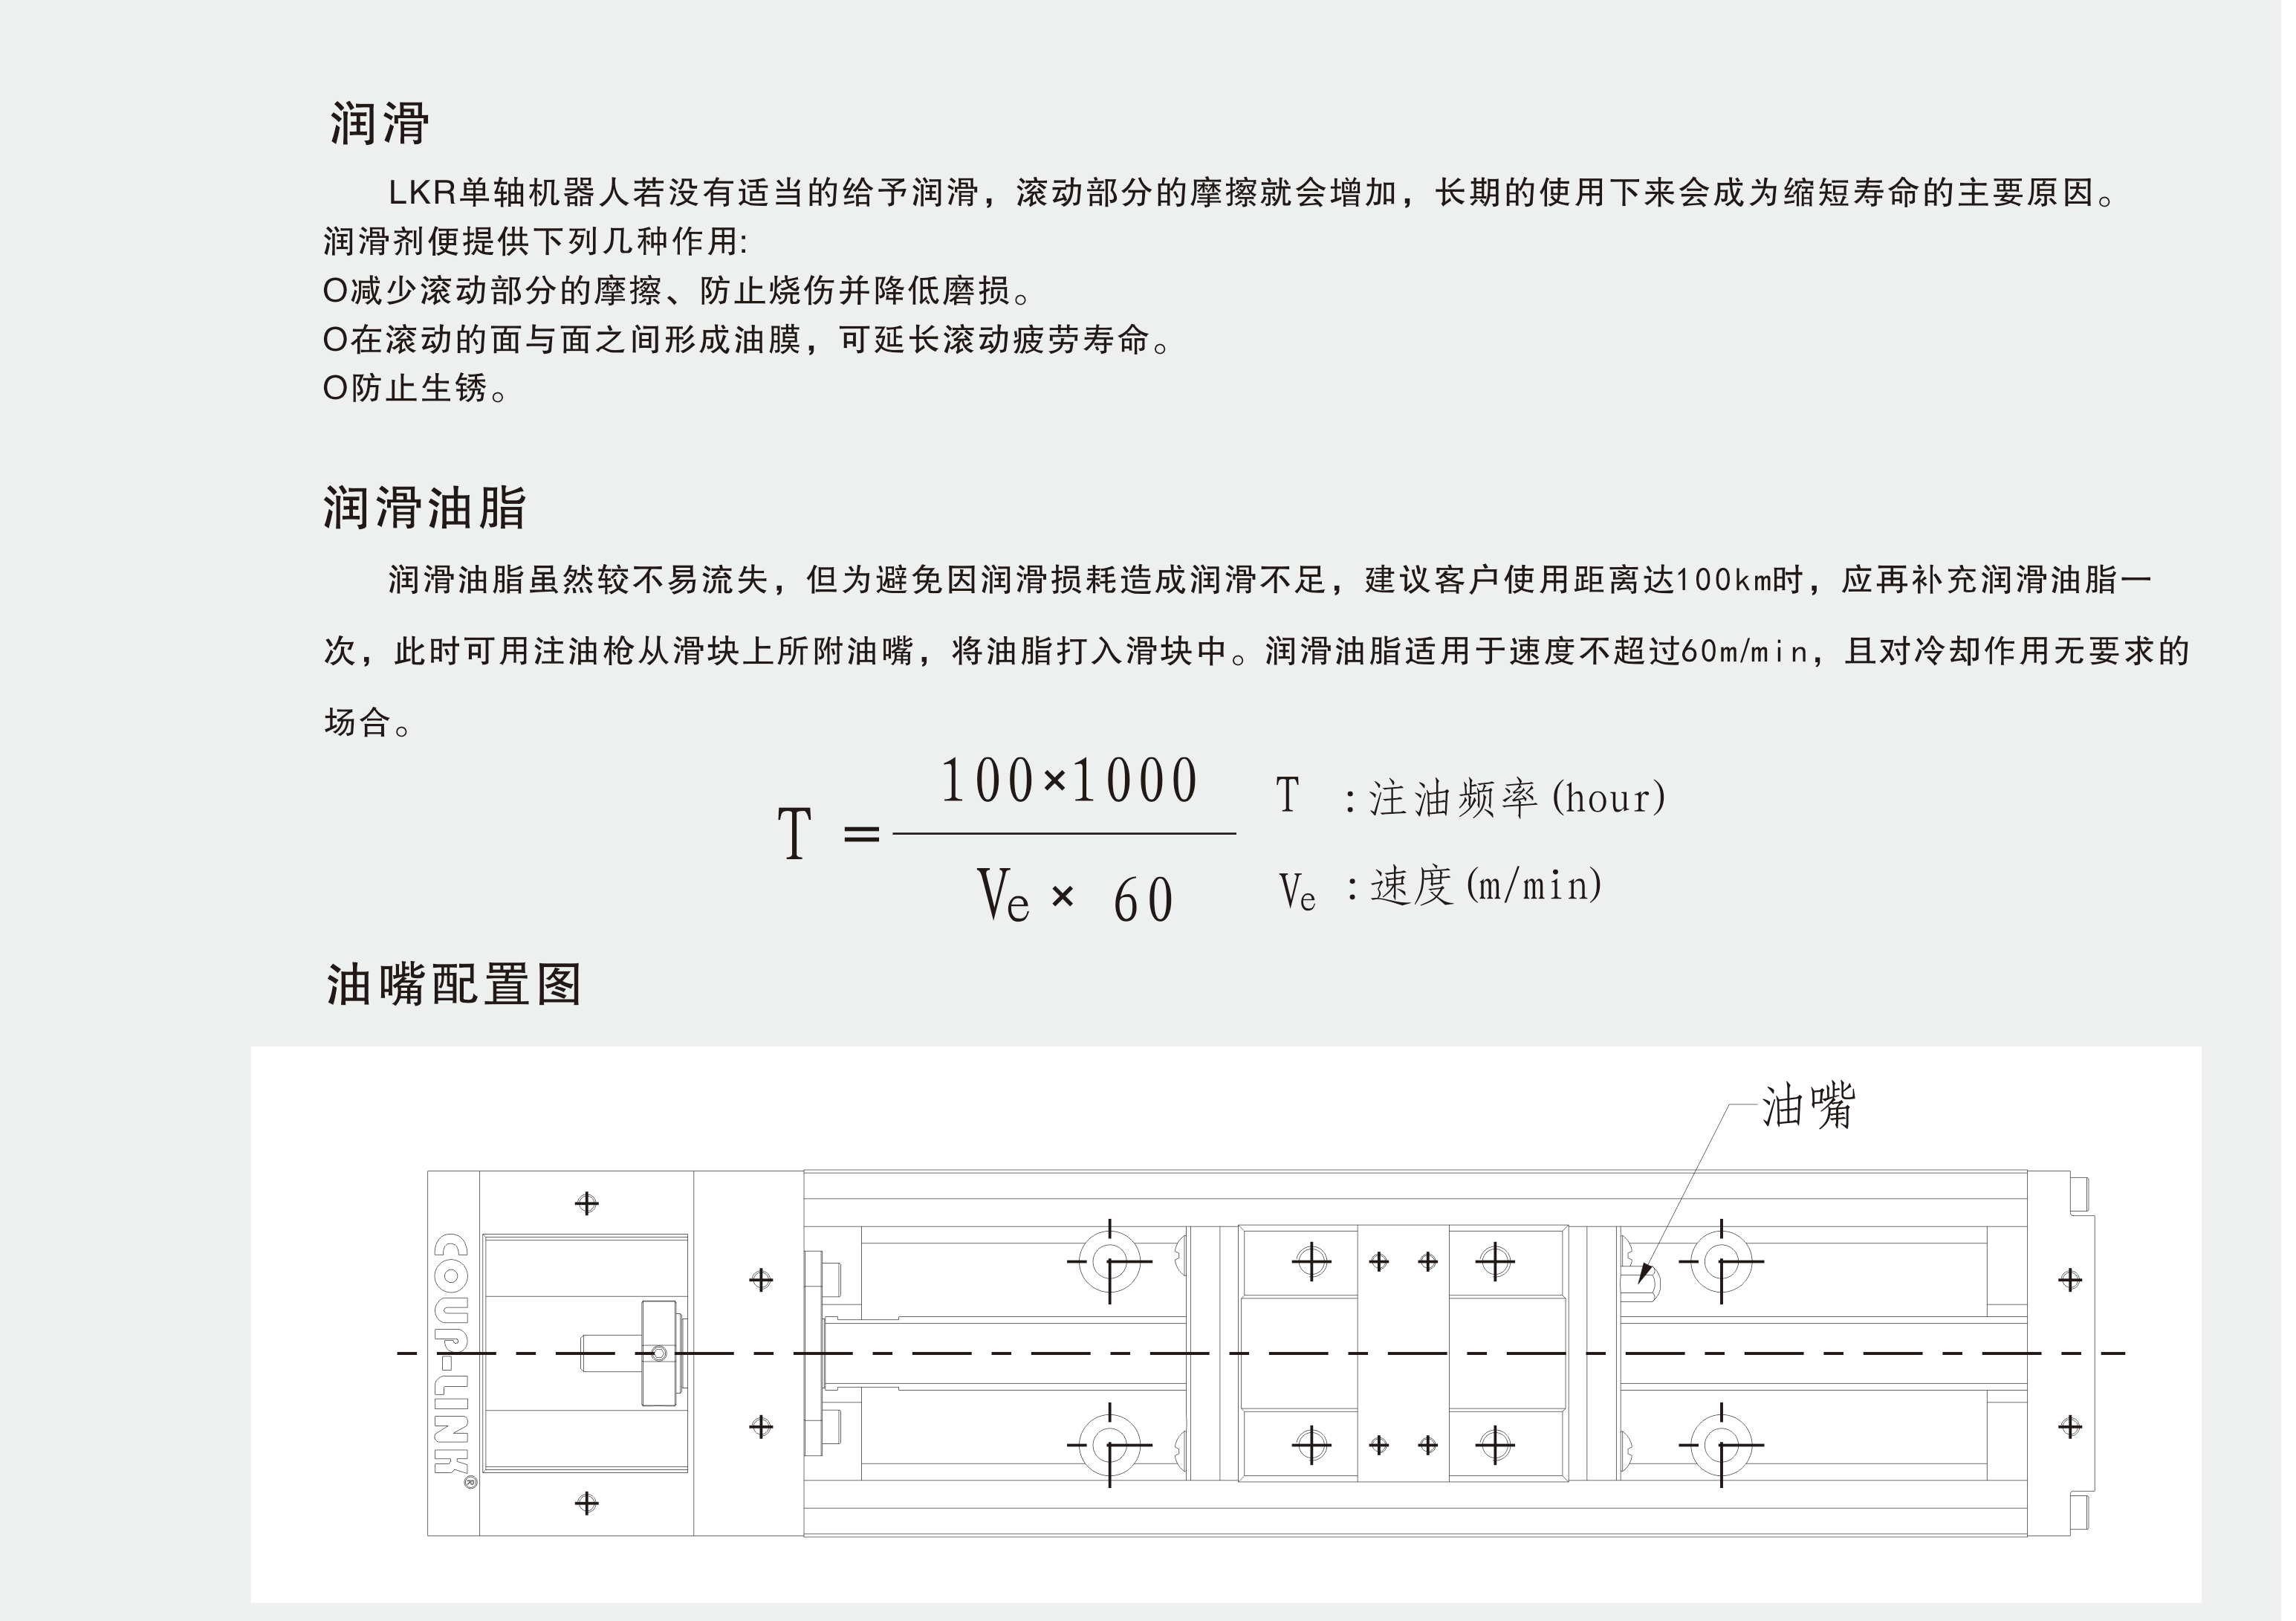 LKR60(不含护盖系列)_联轴器种类-广州菱科自动化设备有限公司